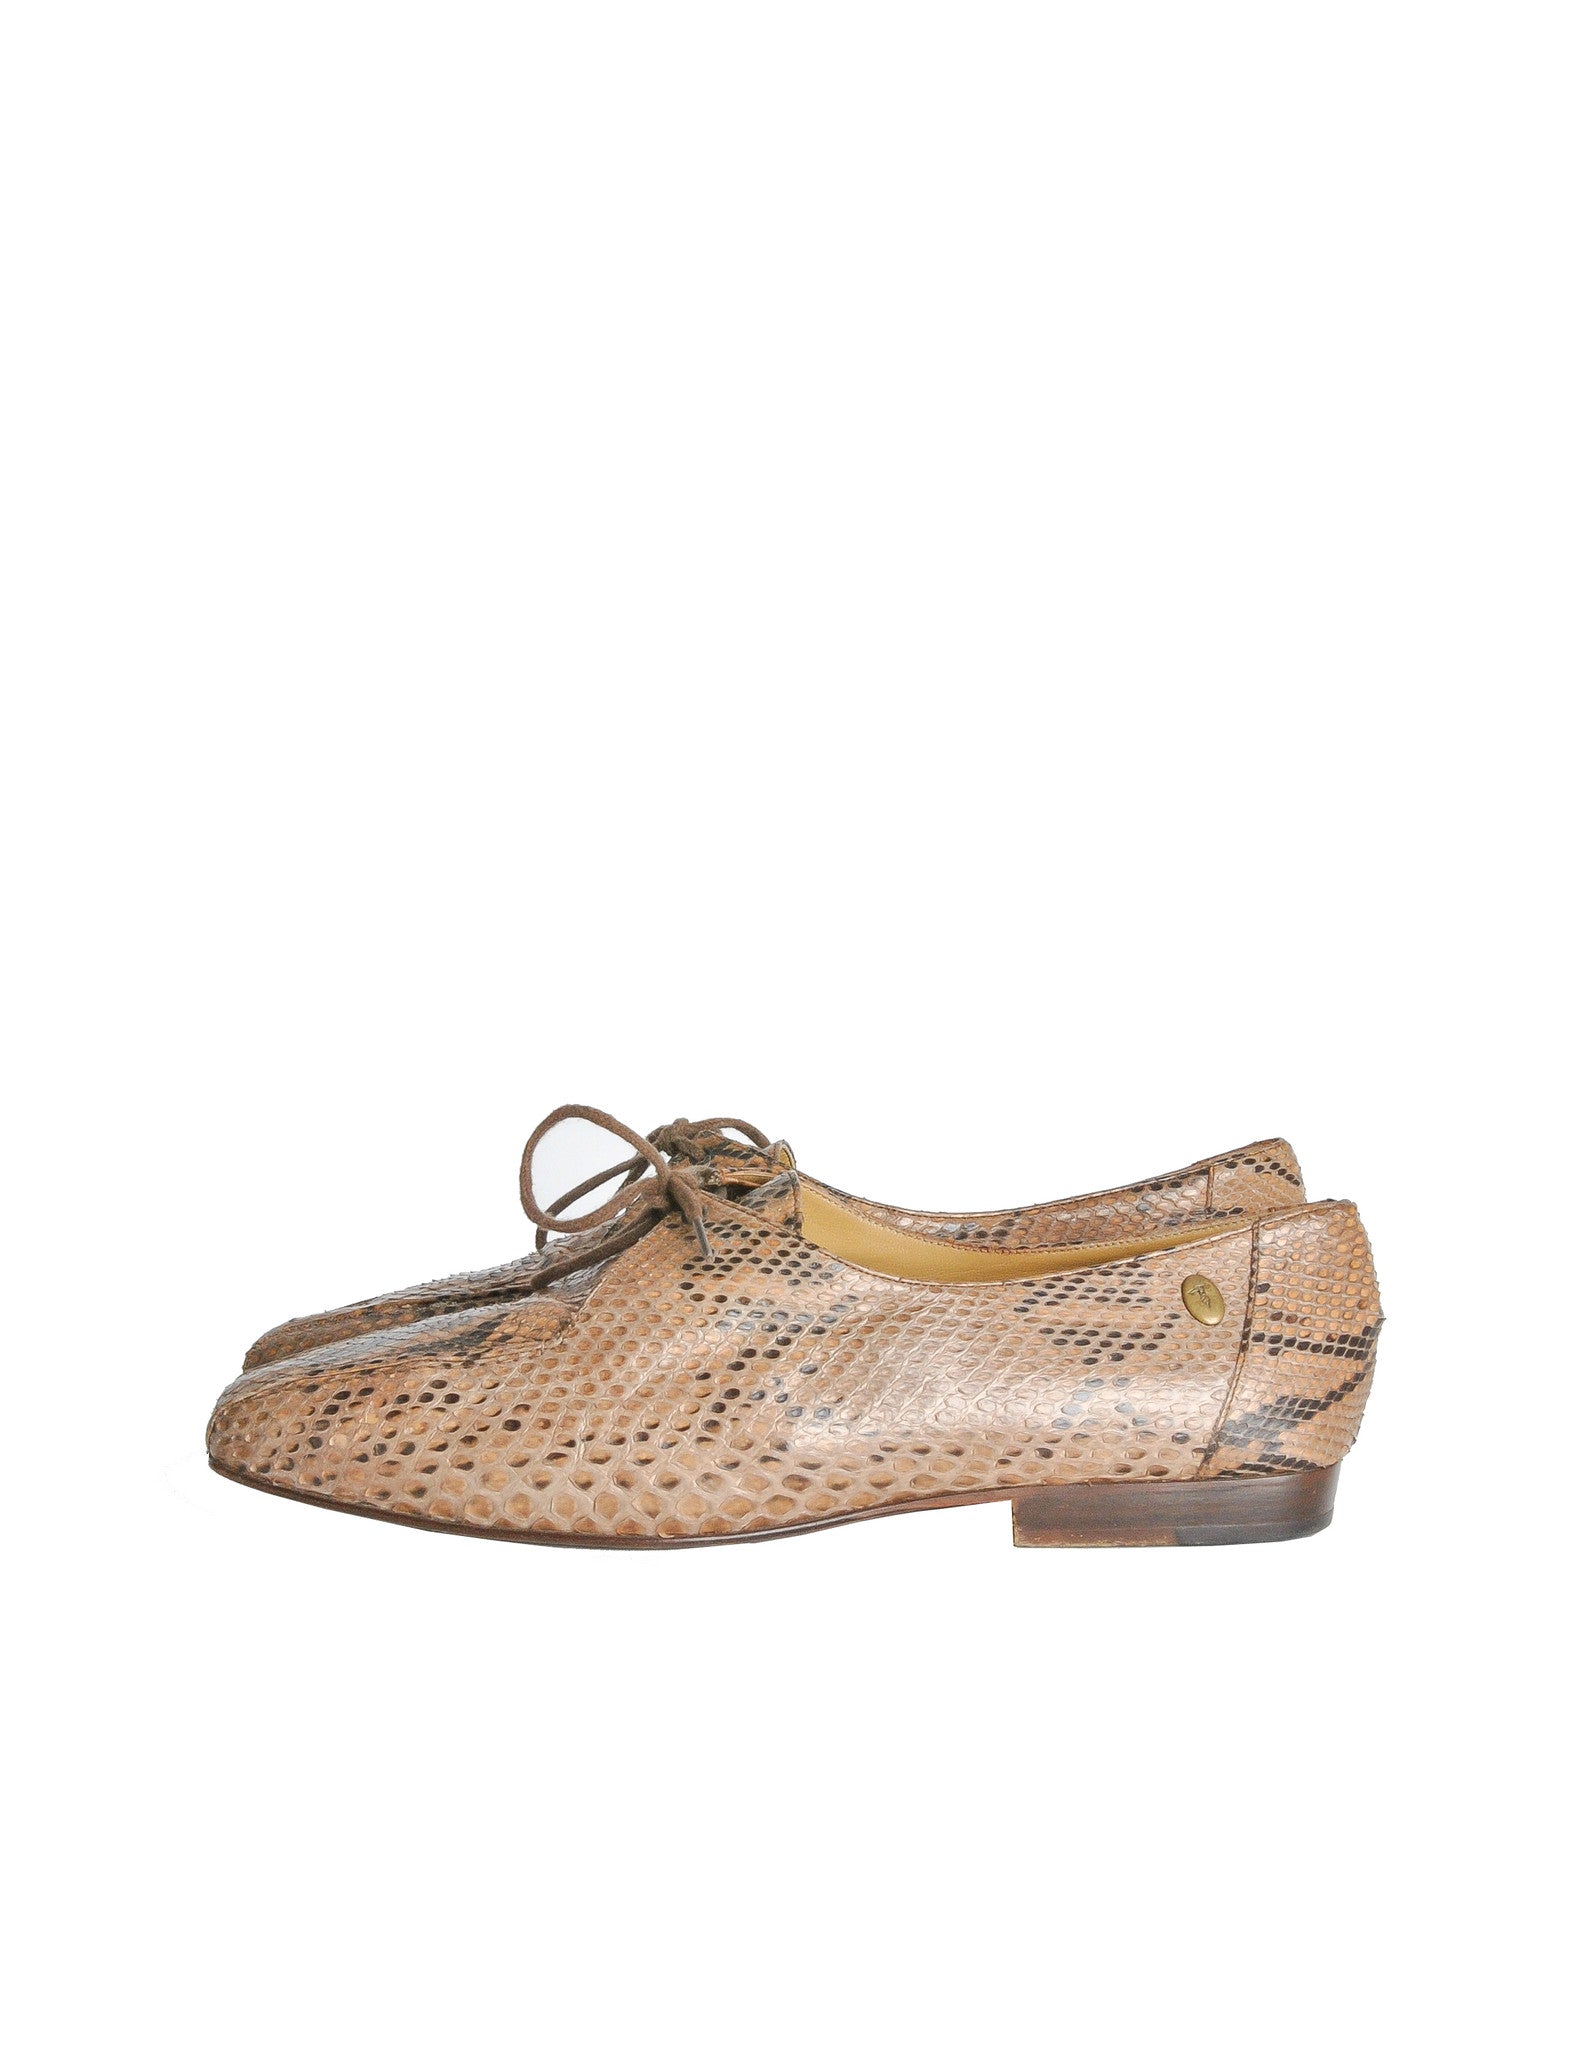 Trussardi Vintage Snakeskin Oxford Shoes